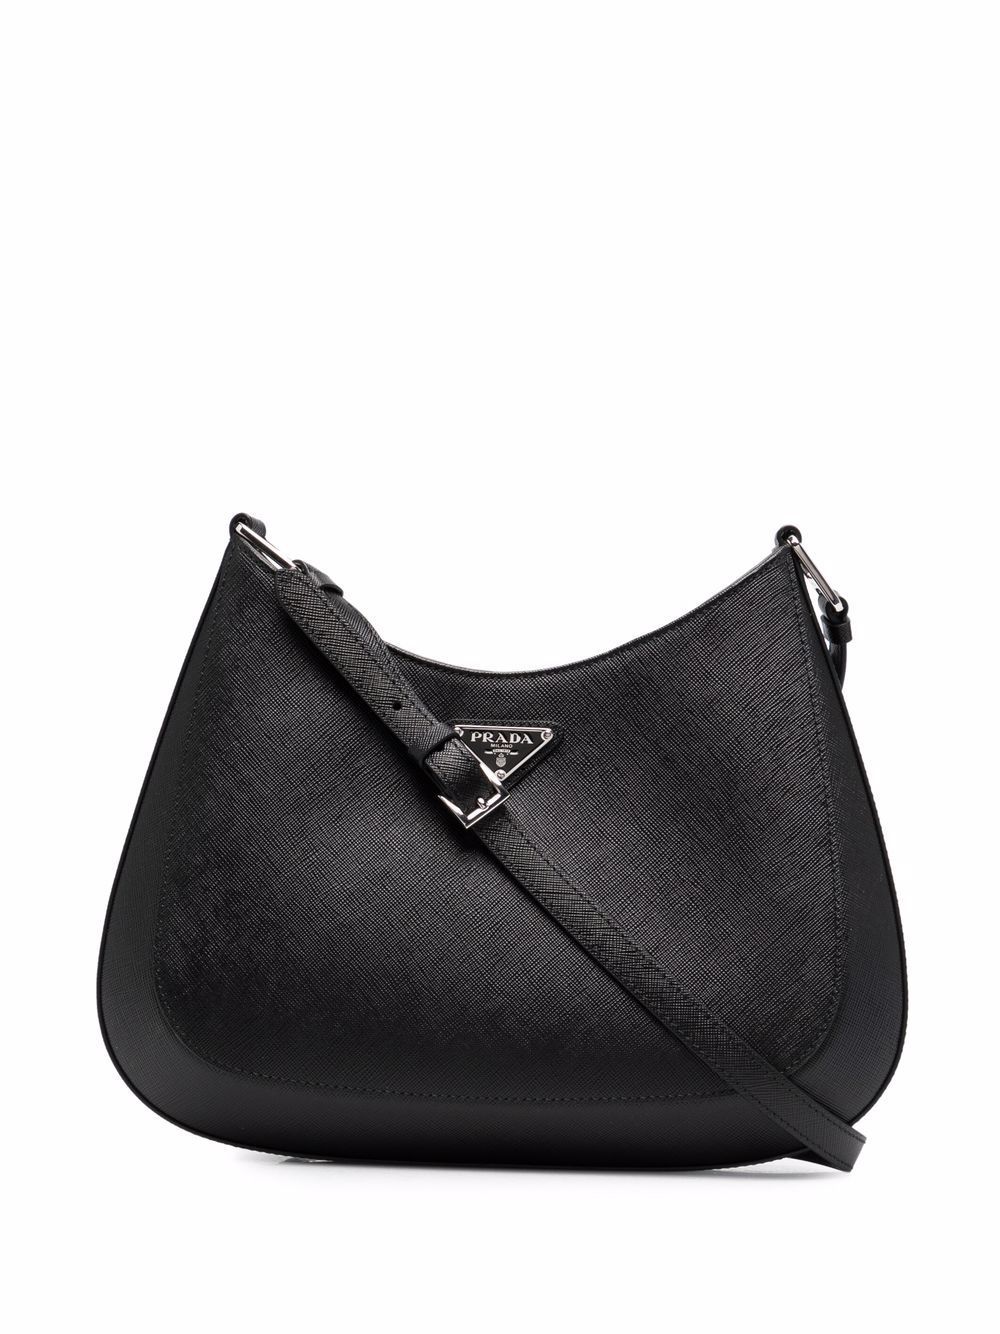 Cleo Saffiano leather shoulder bag | Prada 